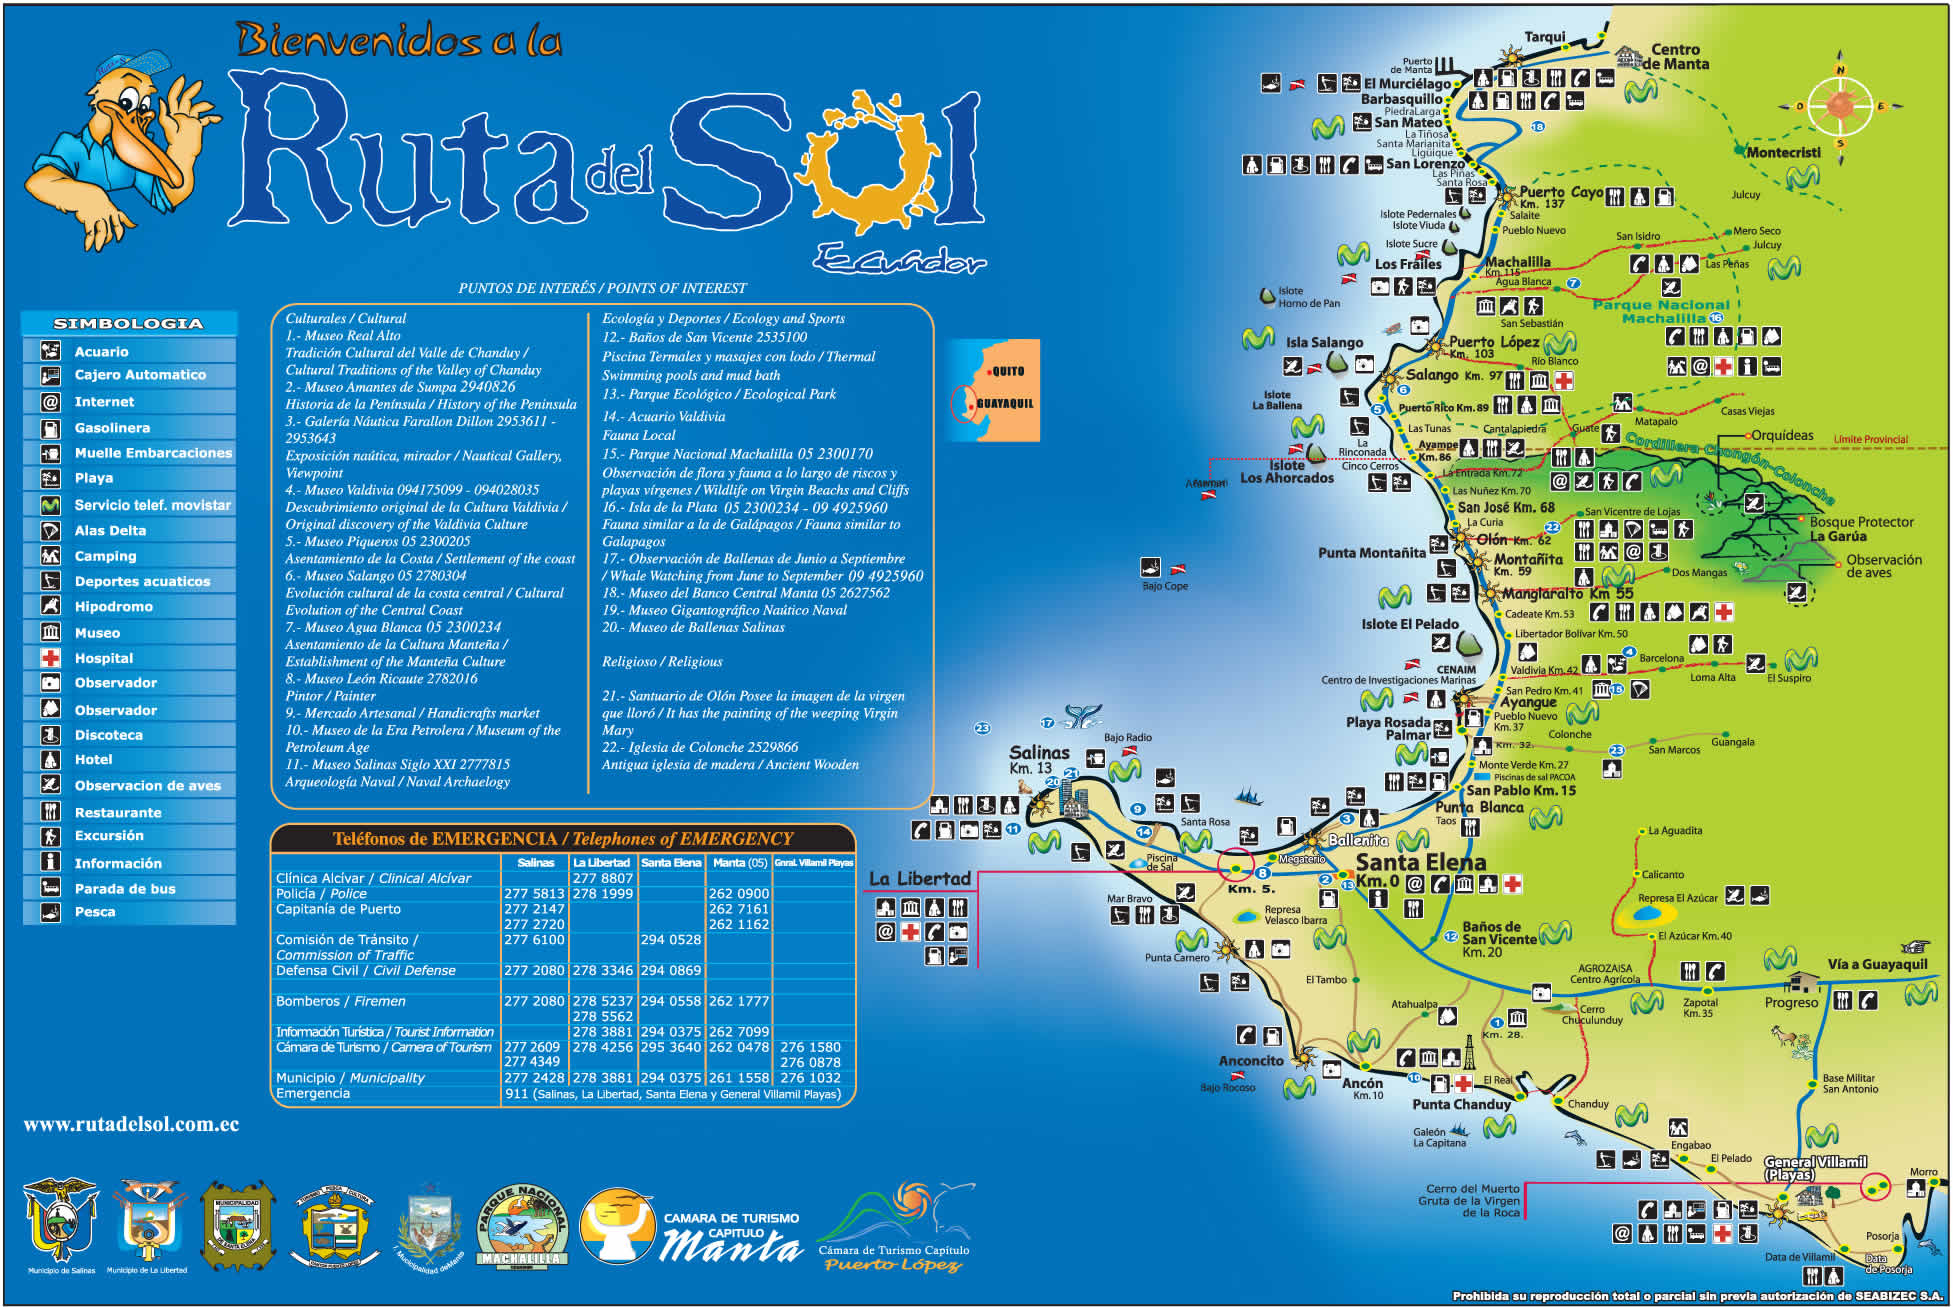 Mapa Turistico De Las Playas Del Ecuador